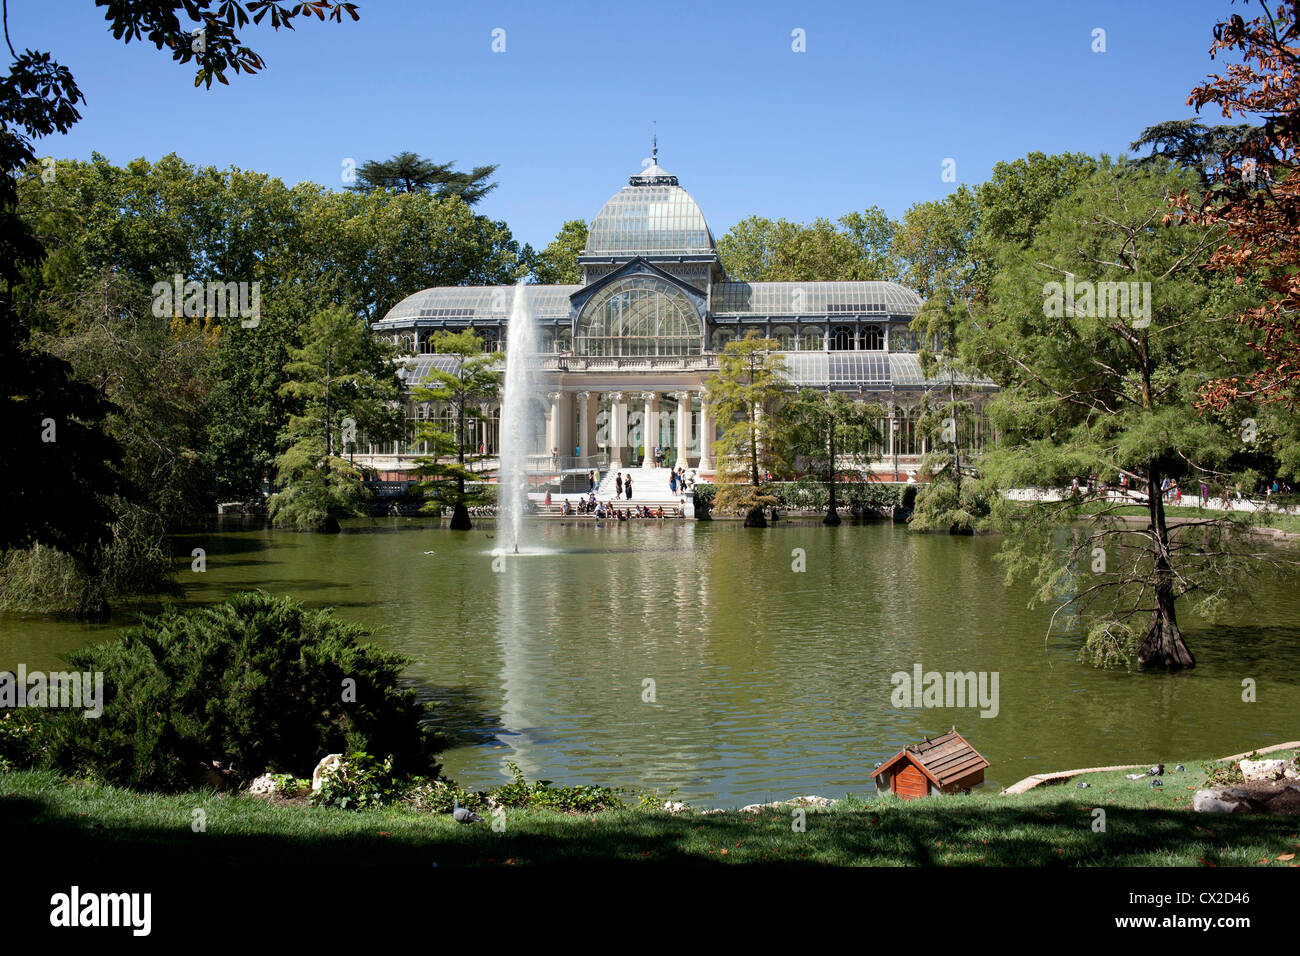 Il Palacio de Cristal è un vasto conservatorio di vetro progettato da Ricardo Velazquez Bosco che siede nel Parco del Retiro di Madrid. Foto Stock